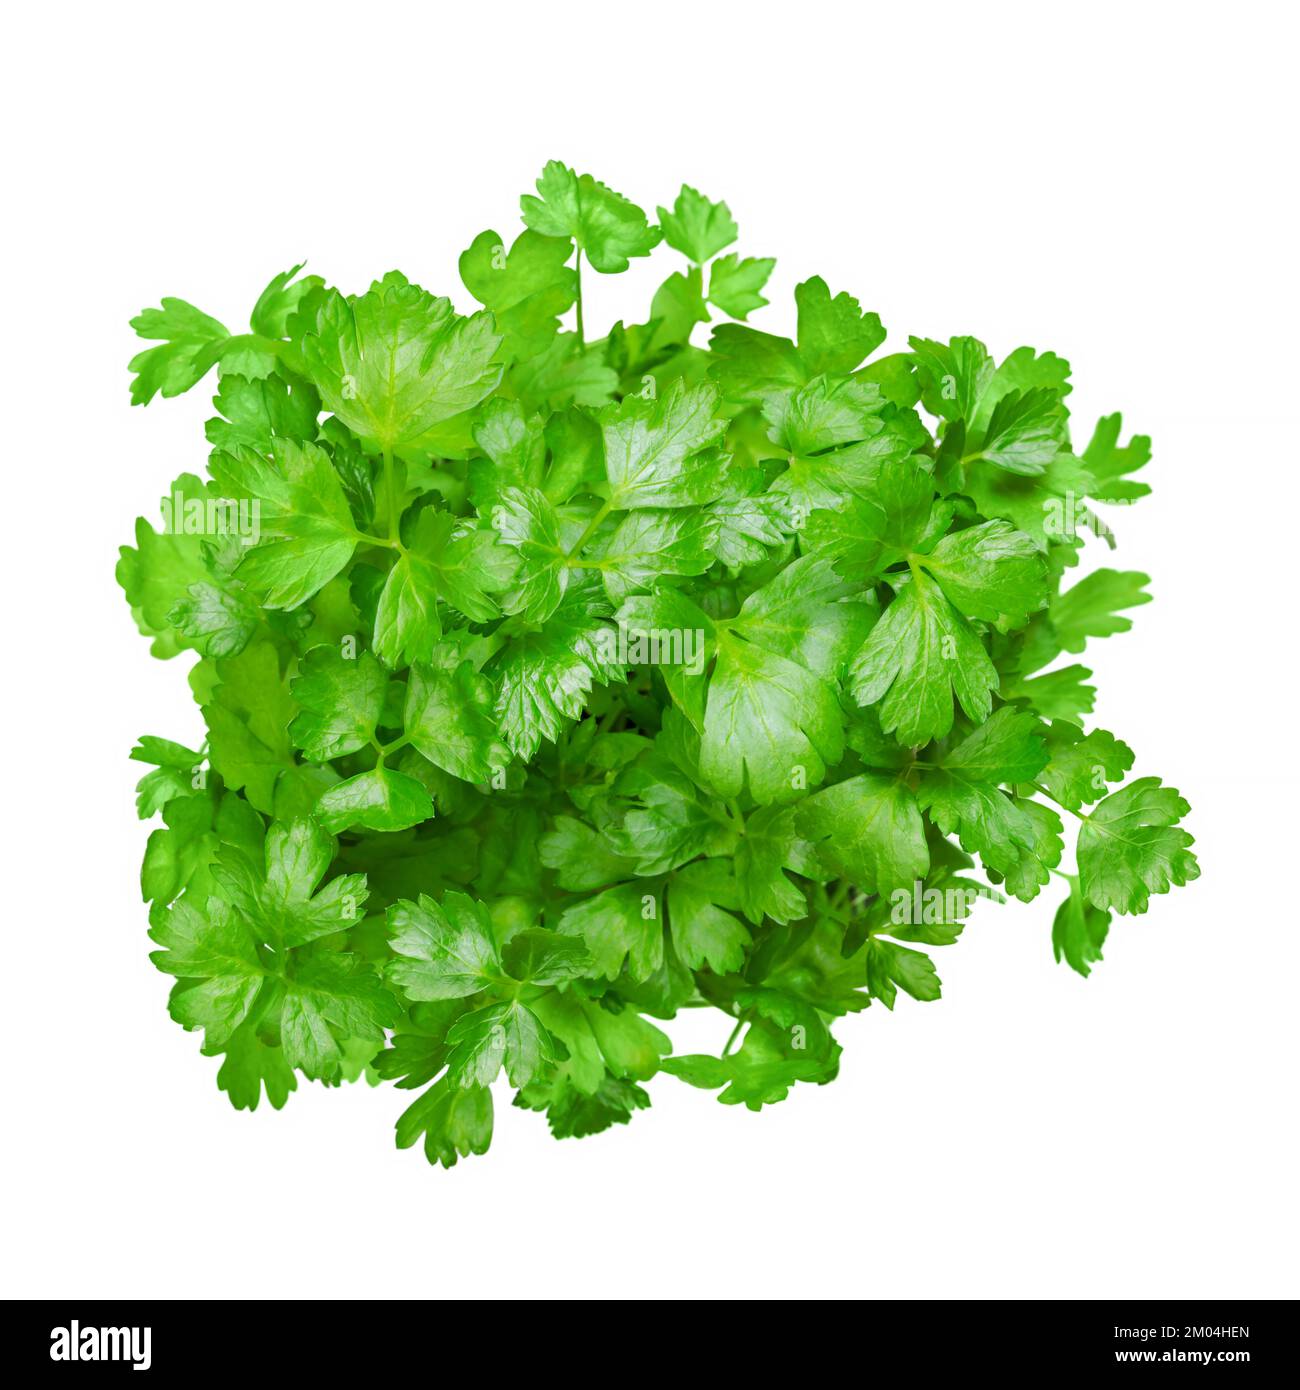 Flache Petersilie, isolierter Strauß, von oben. Petersilie mit hellgrünen und nicht zerknitterten Blättern. Petroselinum crispum, kultiviert als Küchenkraut. Stockfoto